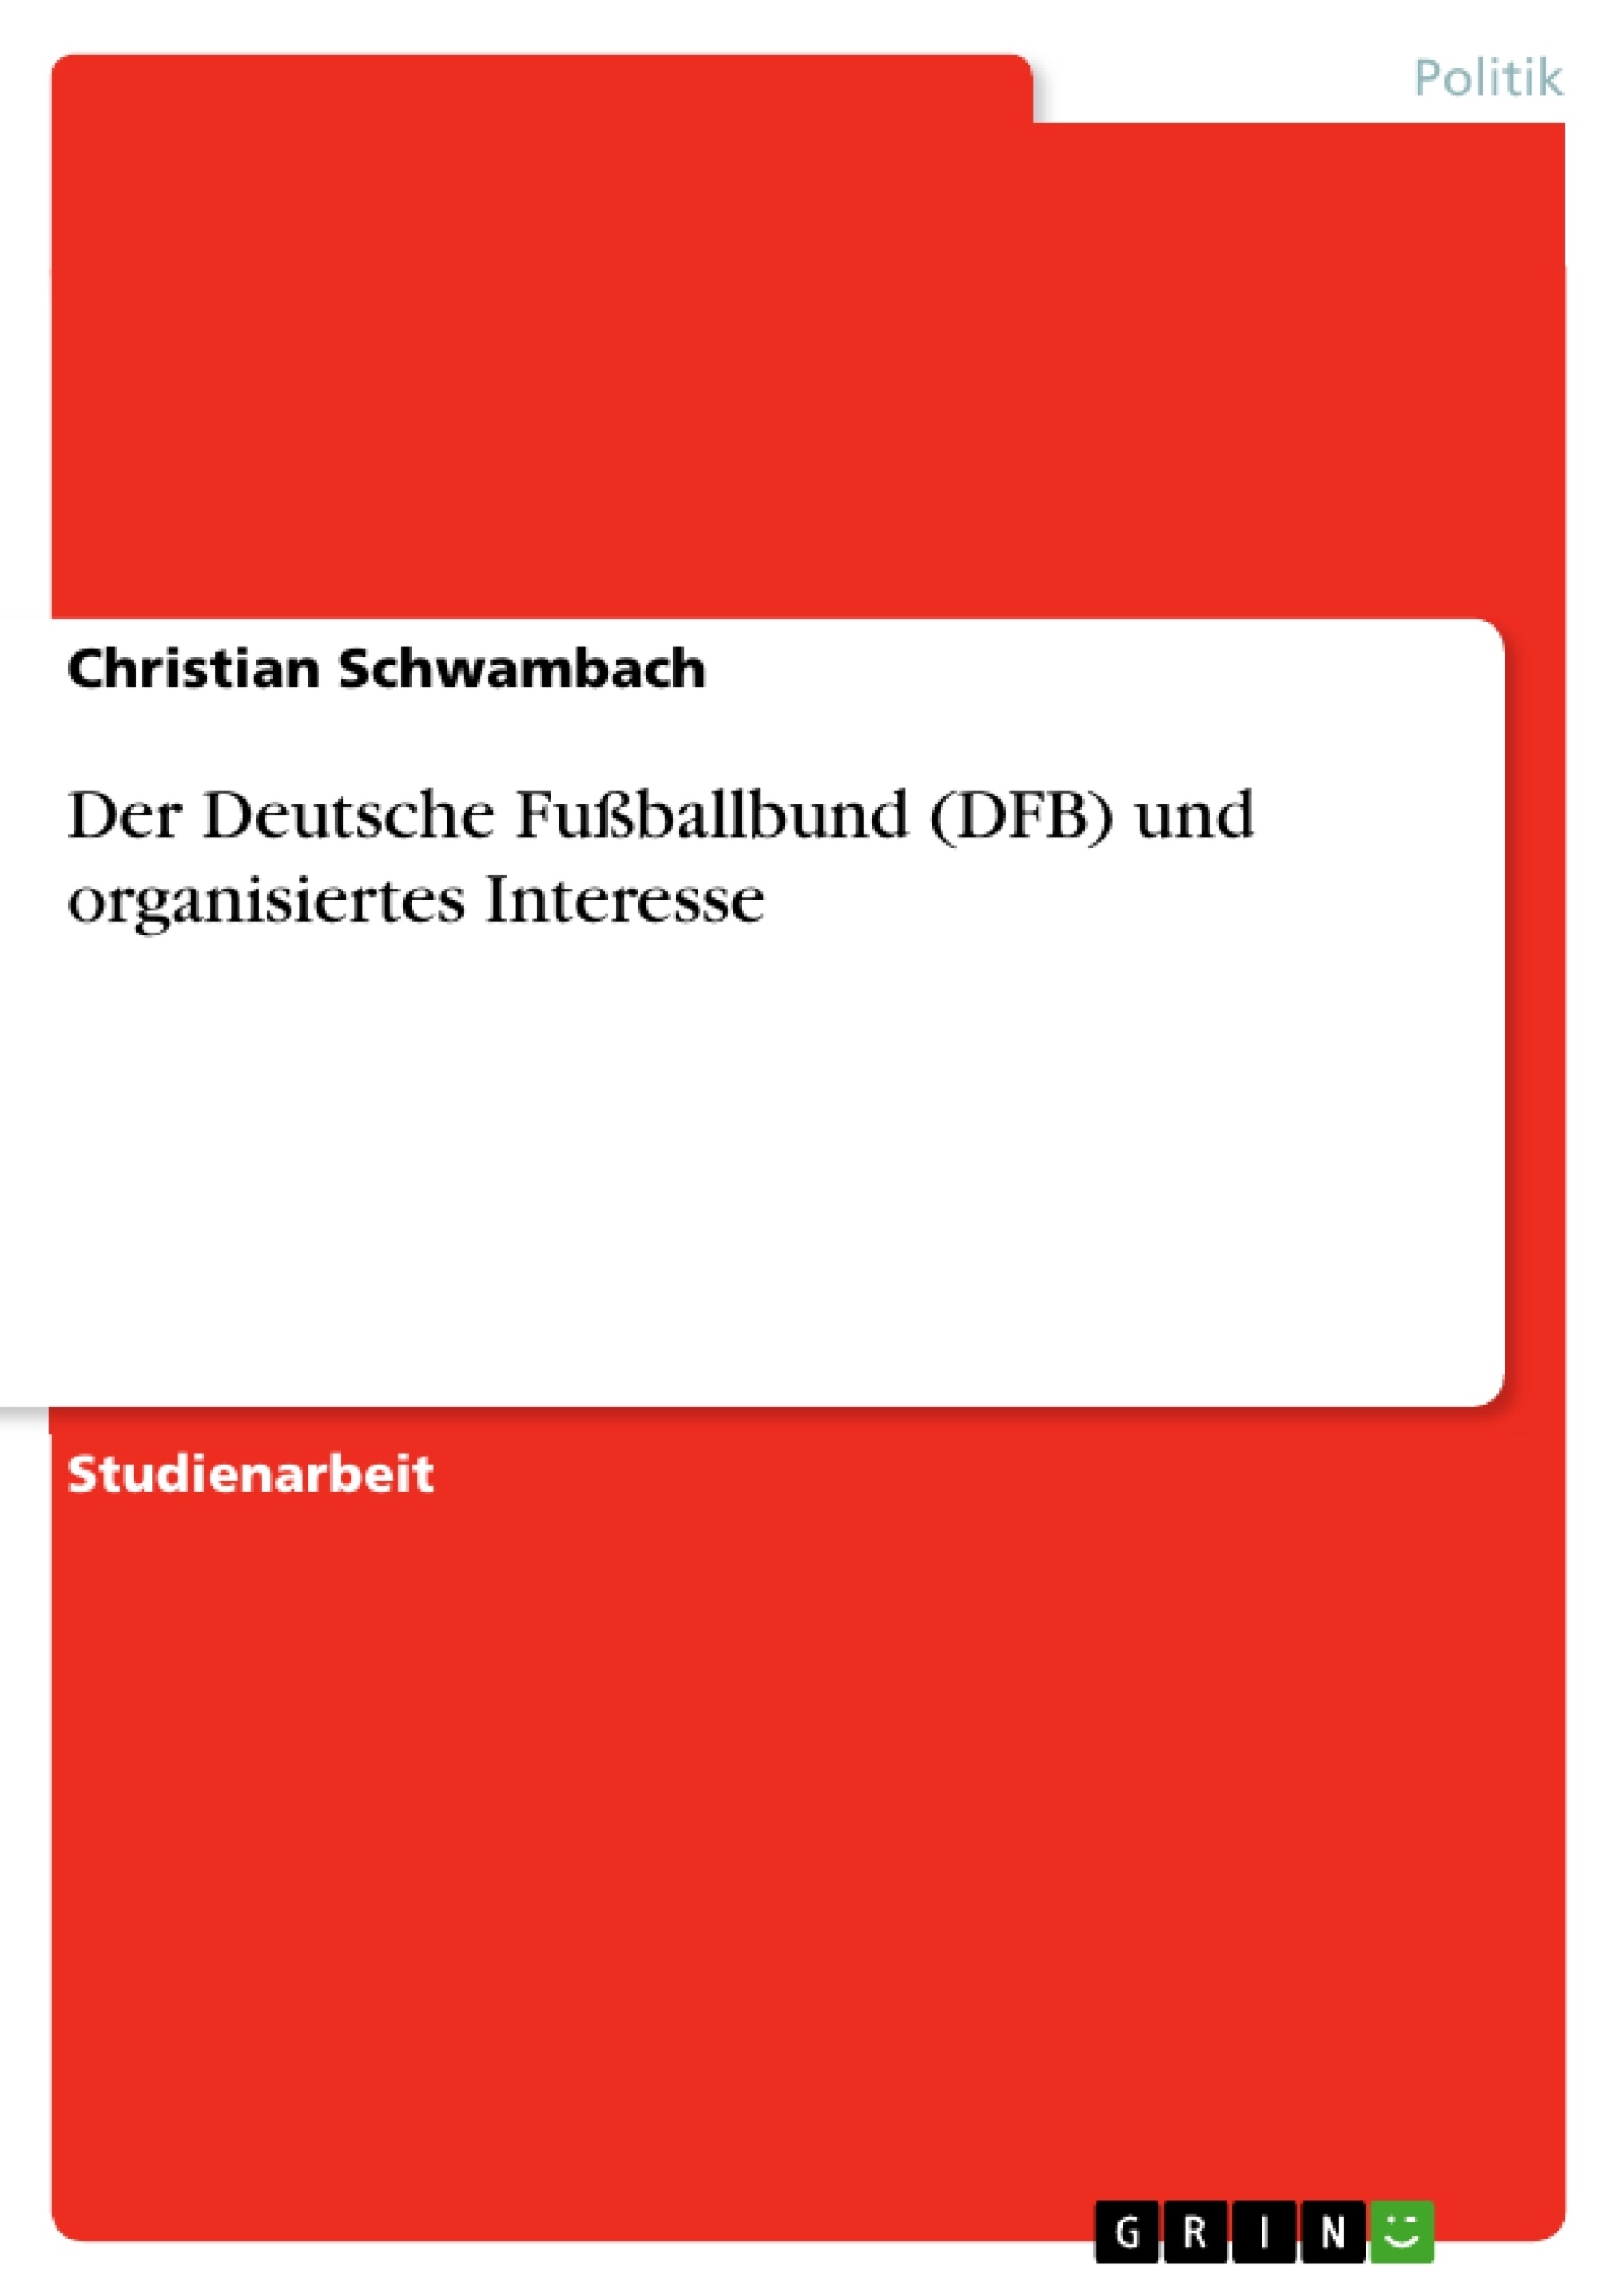 Título: Der Deutsche Fußballbund (DFB) und organisiertes Interesse